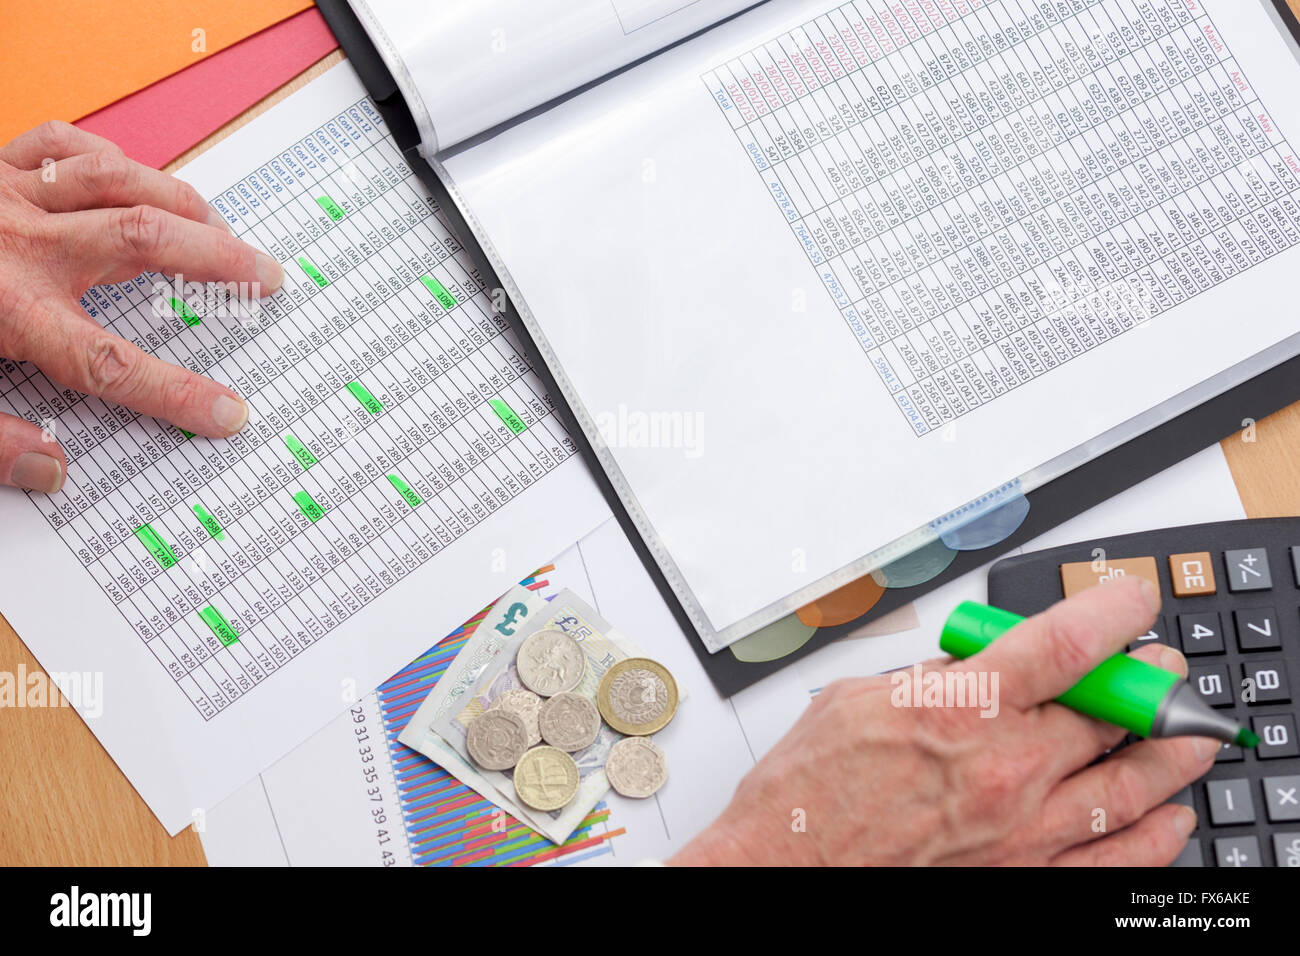 Beschäftigt Finanzier an seinem Schreibtisch mit einen Taschenrechner, einen Umsatzbericht mit Bargeld lose Verlegung oberste Sicherheitsebene eines Diagramms zu überprüfen Stockfoto